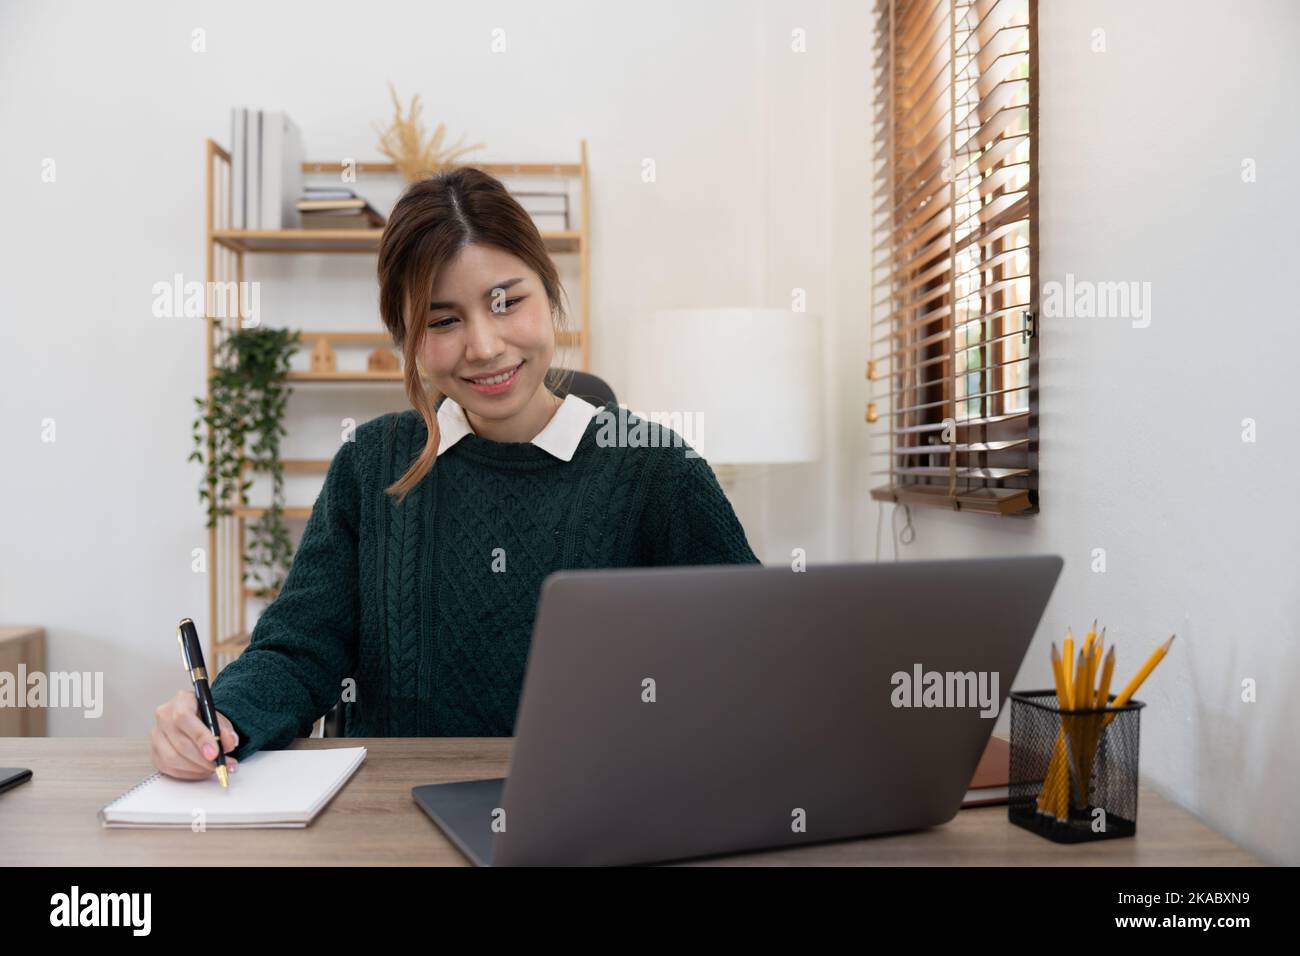 asiatische Studentin, die fernab von zu Hause studiert, einen Laptop benutzt, während des Online-Unterrichts Notizen auf dem Notizblock macht, E-Learning-Konzept, lächelnd Stockfoto